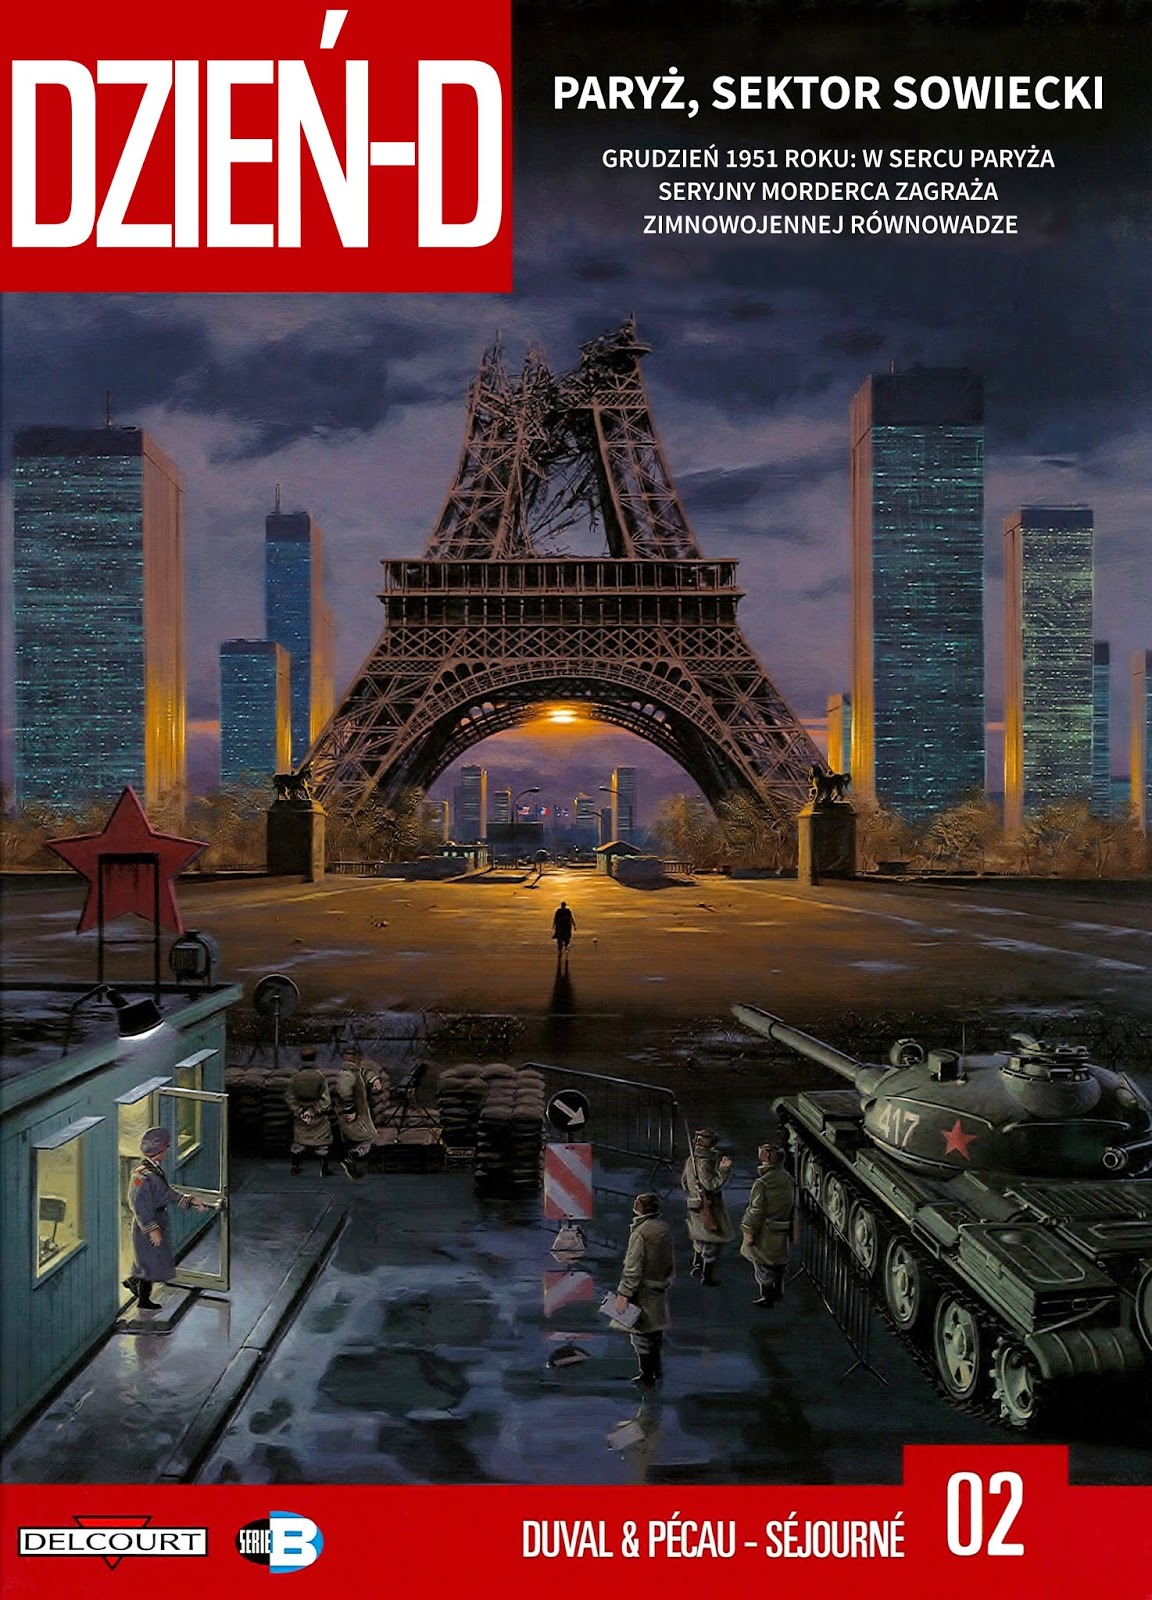 Paryż, strefa sowiecka